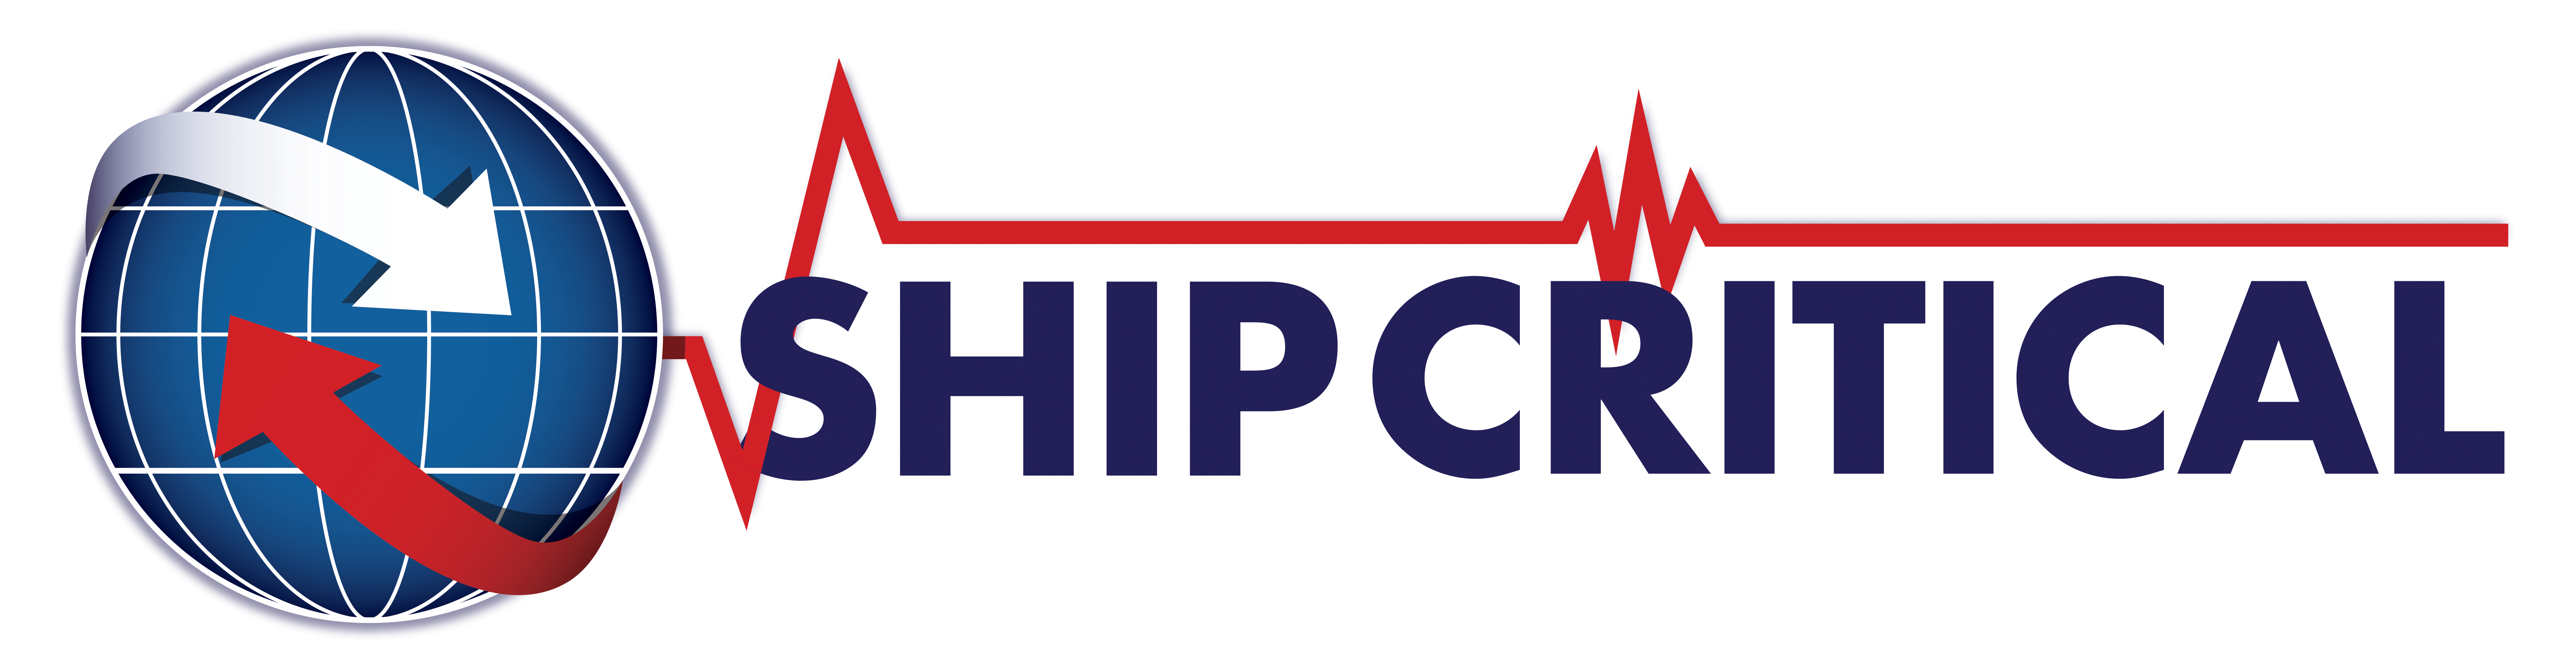 ShipCritical, Inc